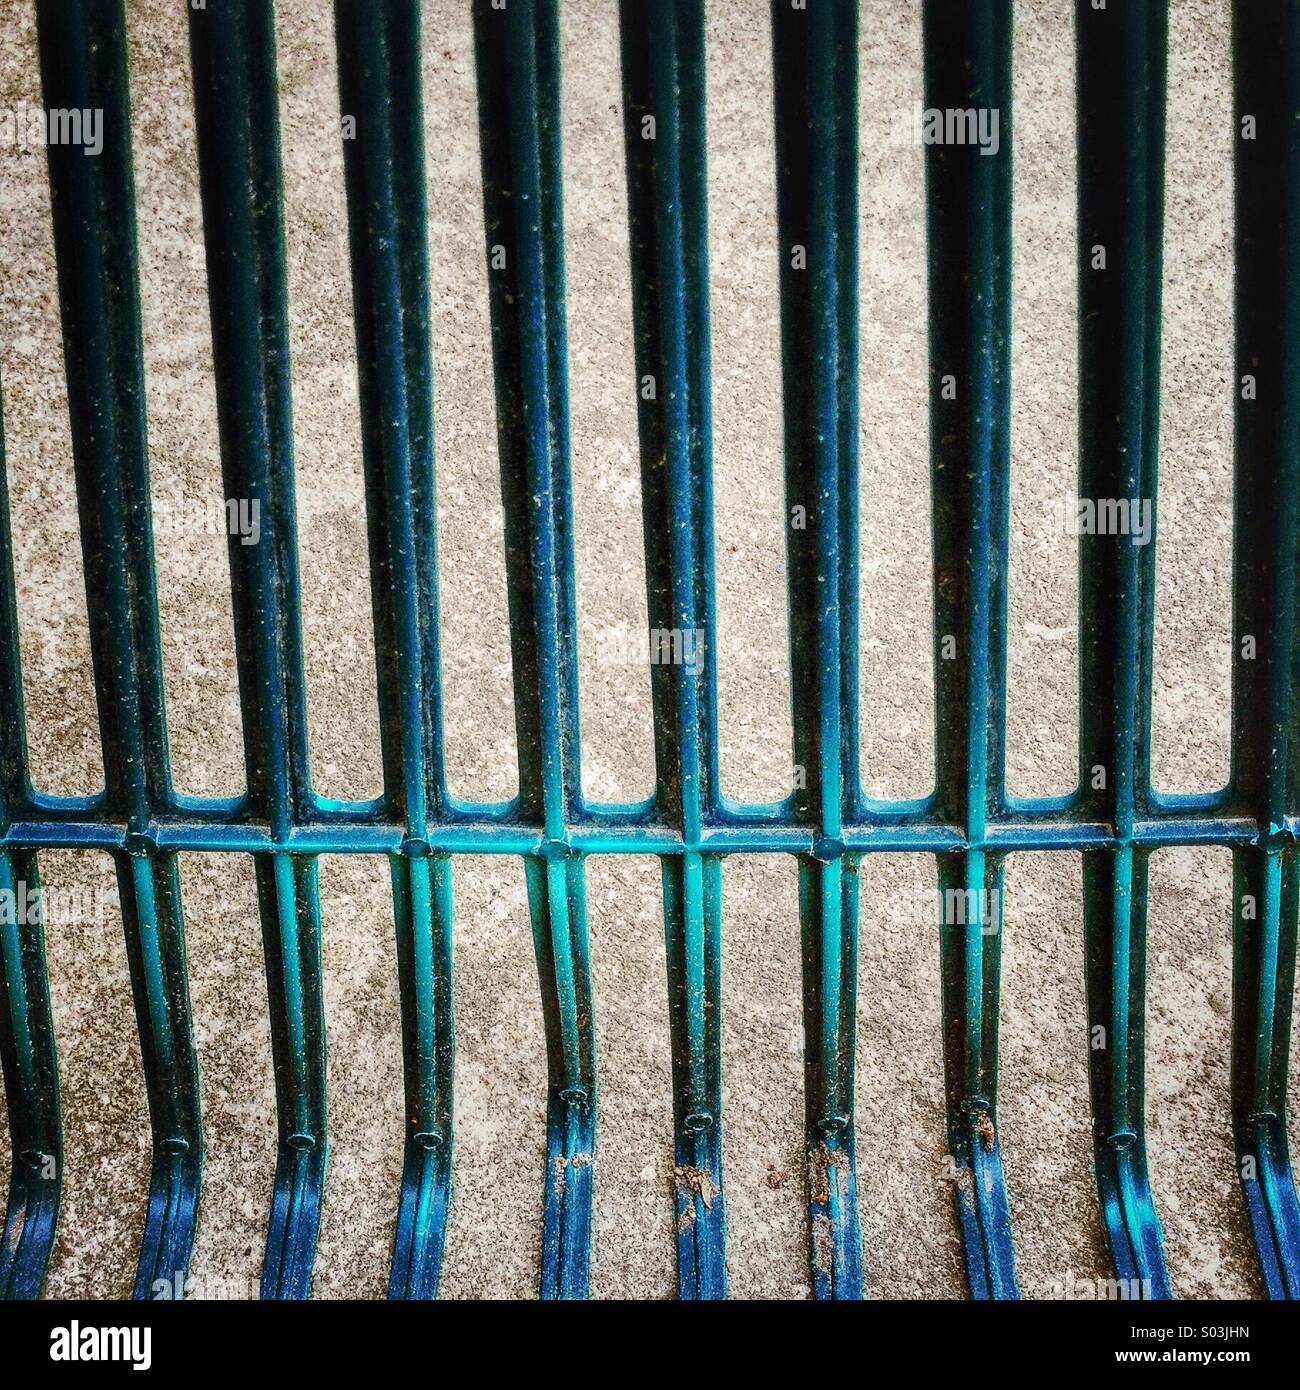 Makro-Zusammenfassung der grünen oder blauen Rasen Rechen sah aus wie Gefängnis Bars. Stockfoto